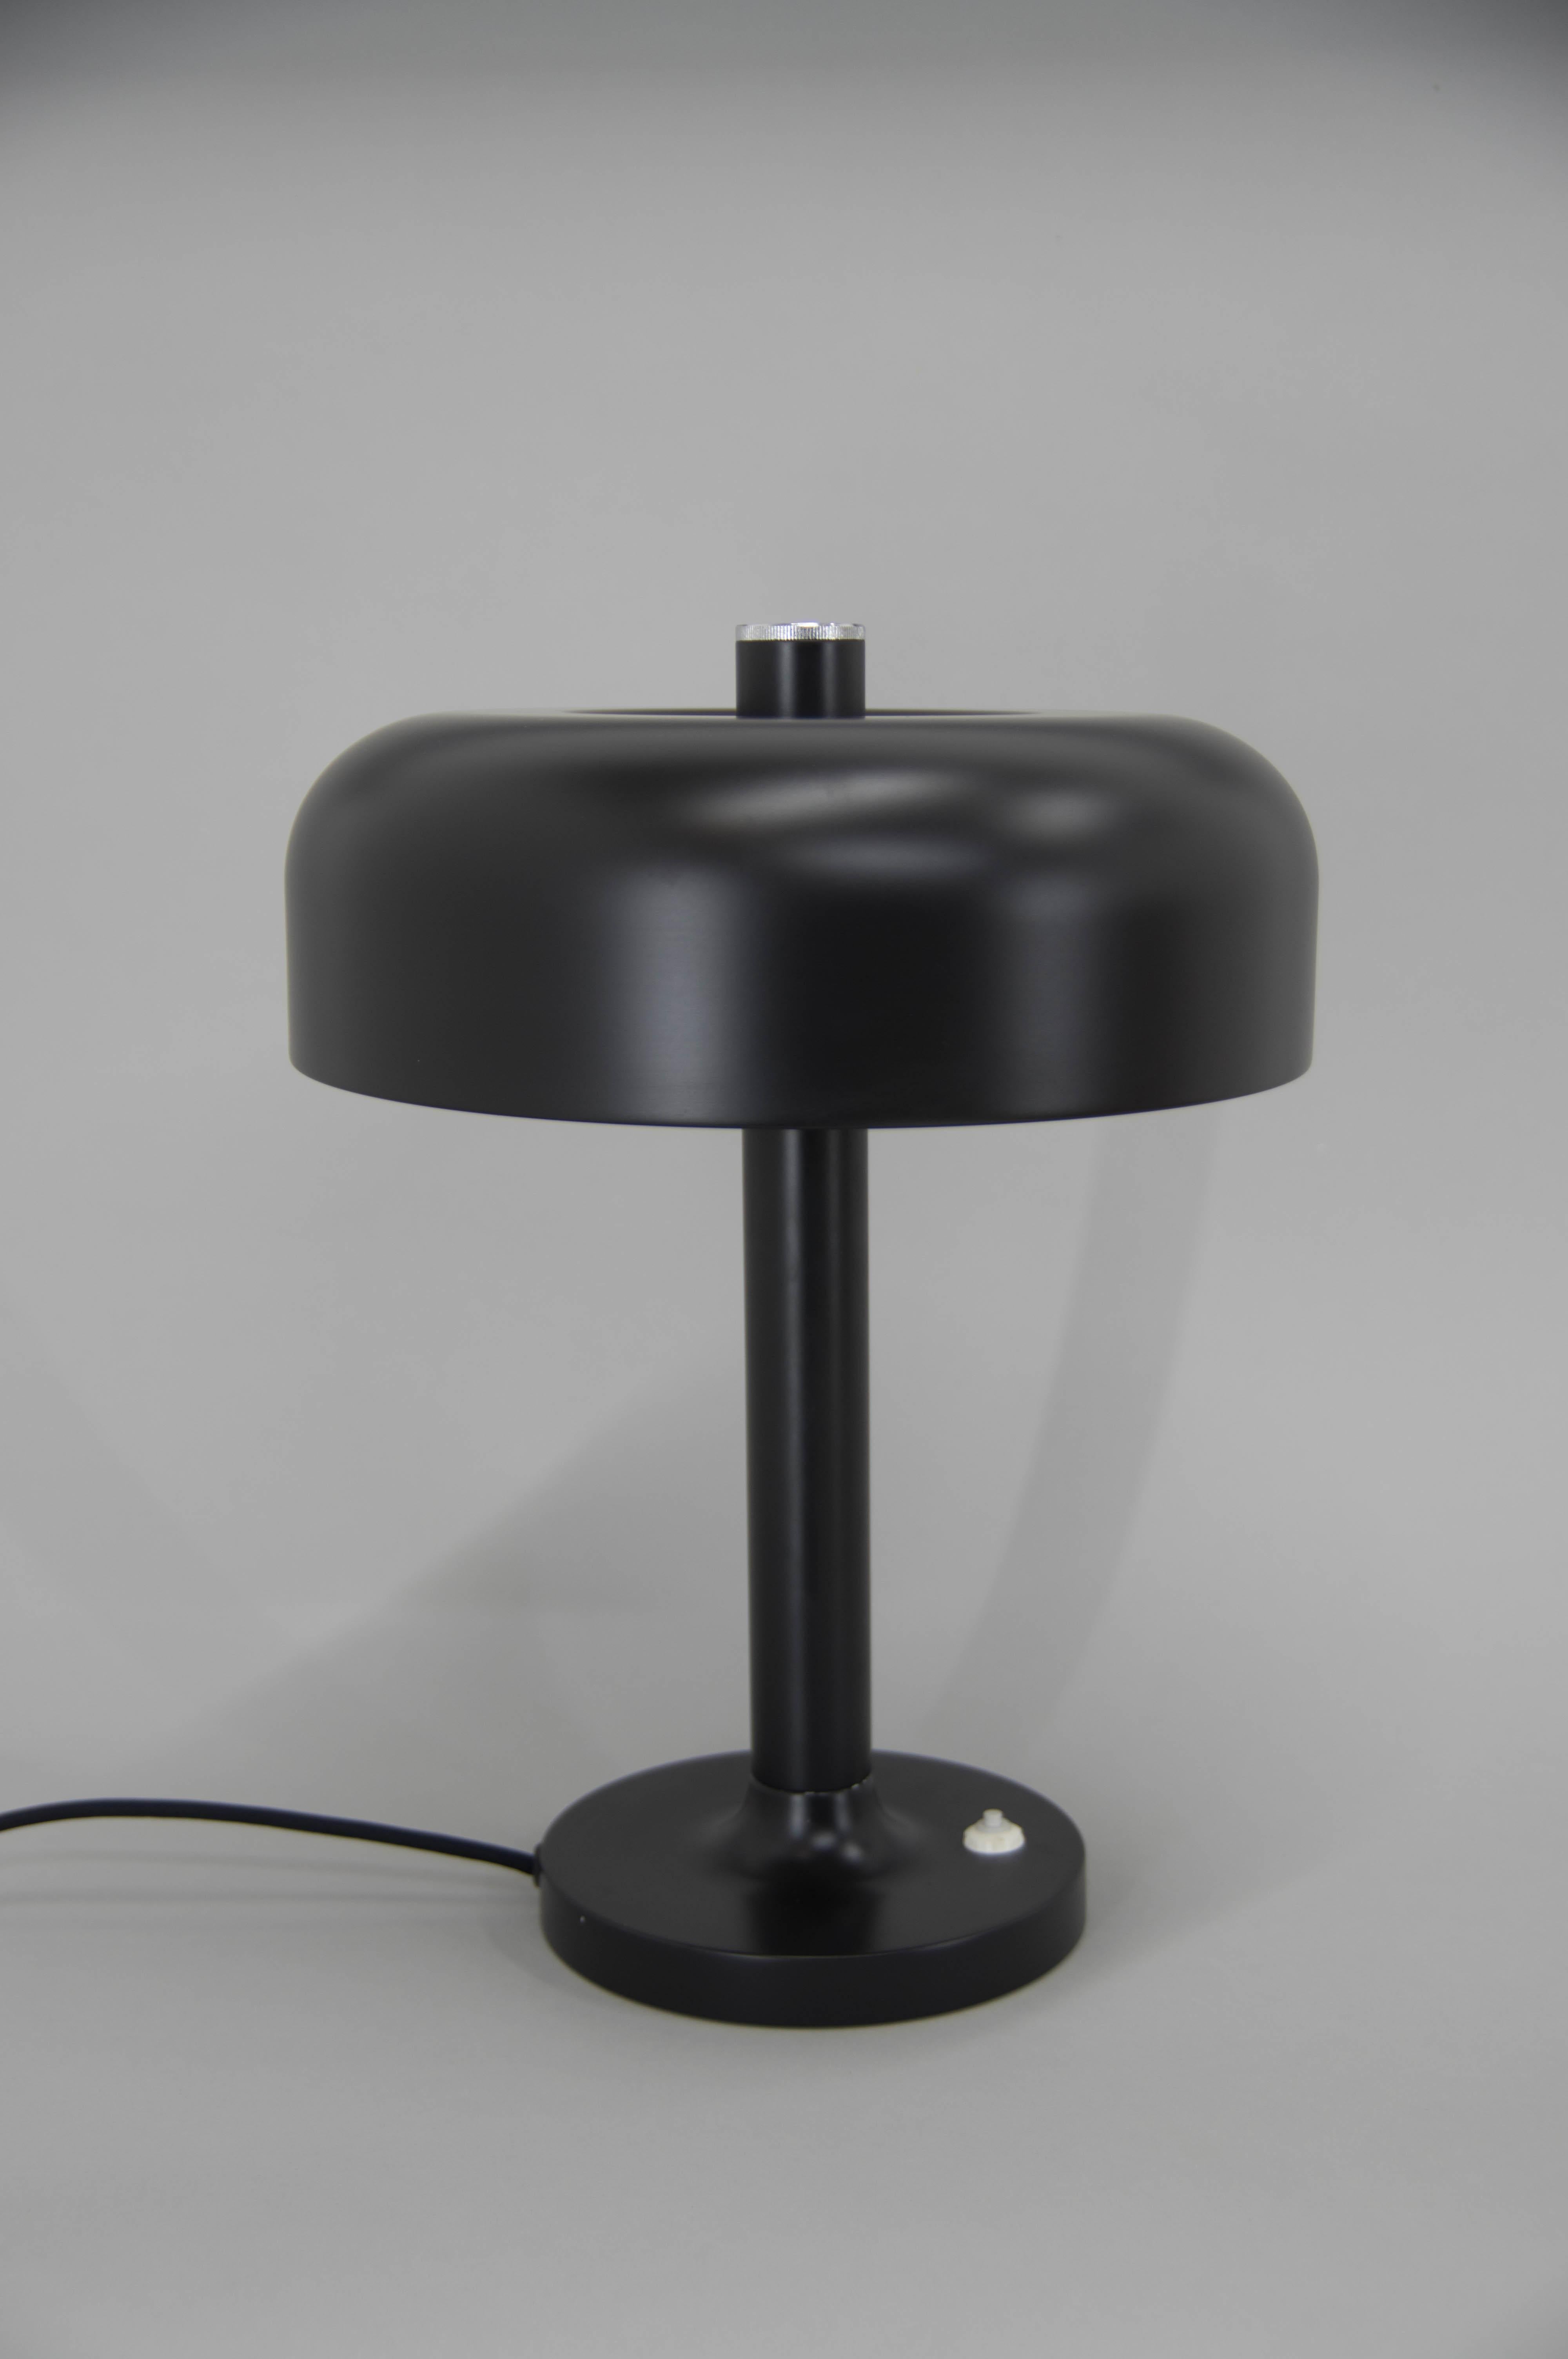 Große schwarze Tischlampe.
Neue Farbe
Geringfügige Farbverluste auf den Fotos zu sehen.
2 x 40W, E25-E27 Glühbirnen
Inklusive US-Steckeradapter.